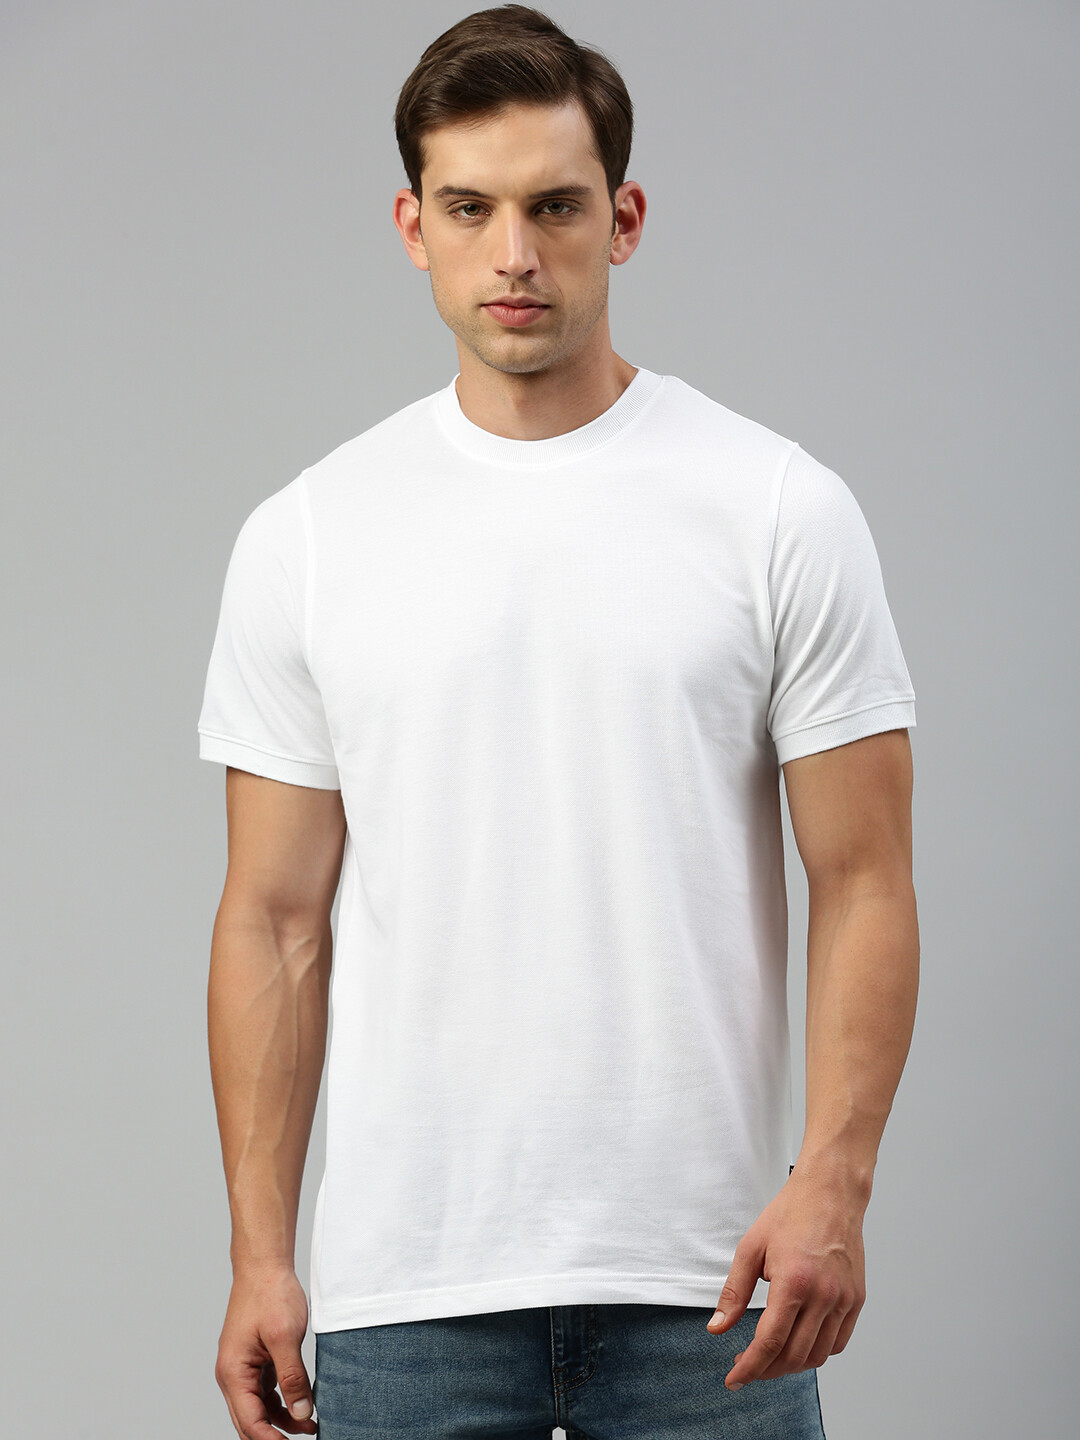 T-Shirt Marley Herren Baumwolle Airtex in Piqué Qualität, Farbe: Blanc 1